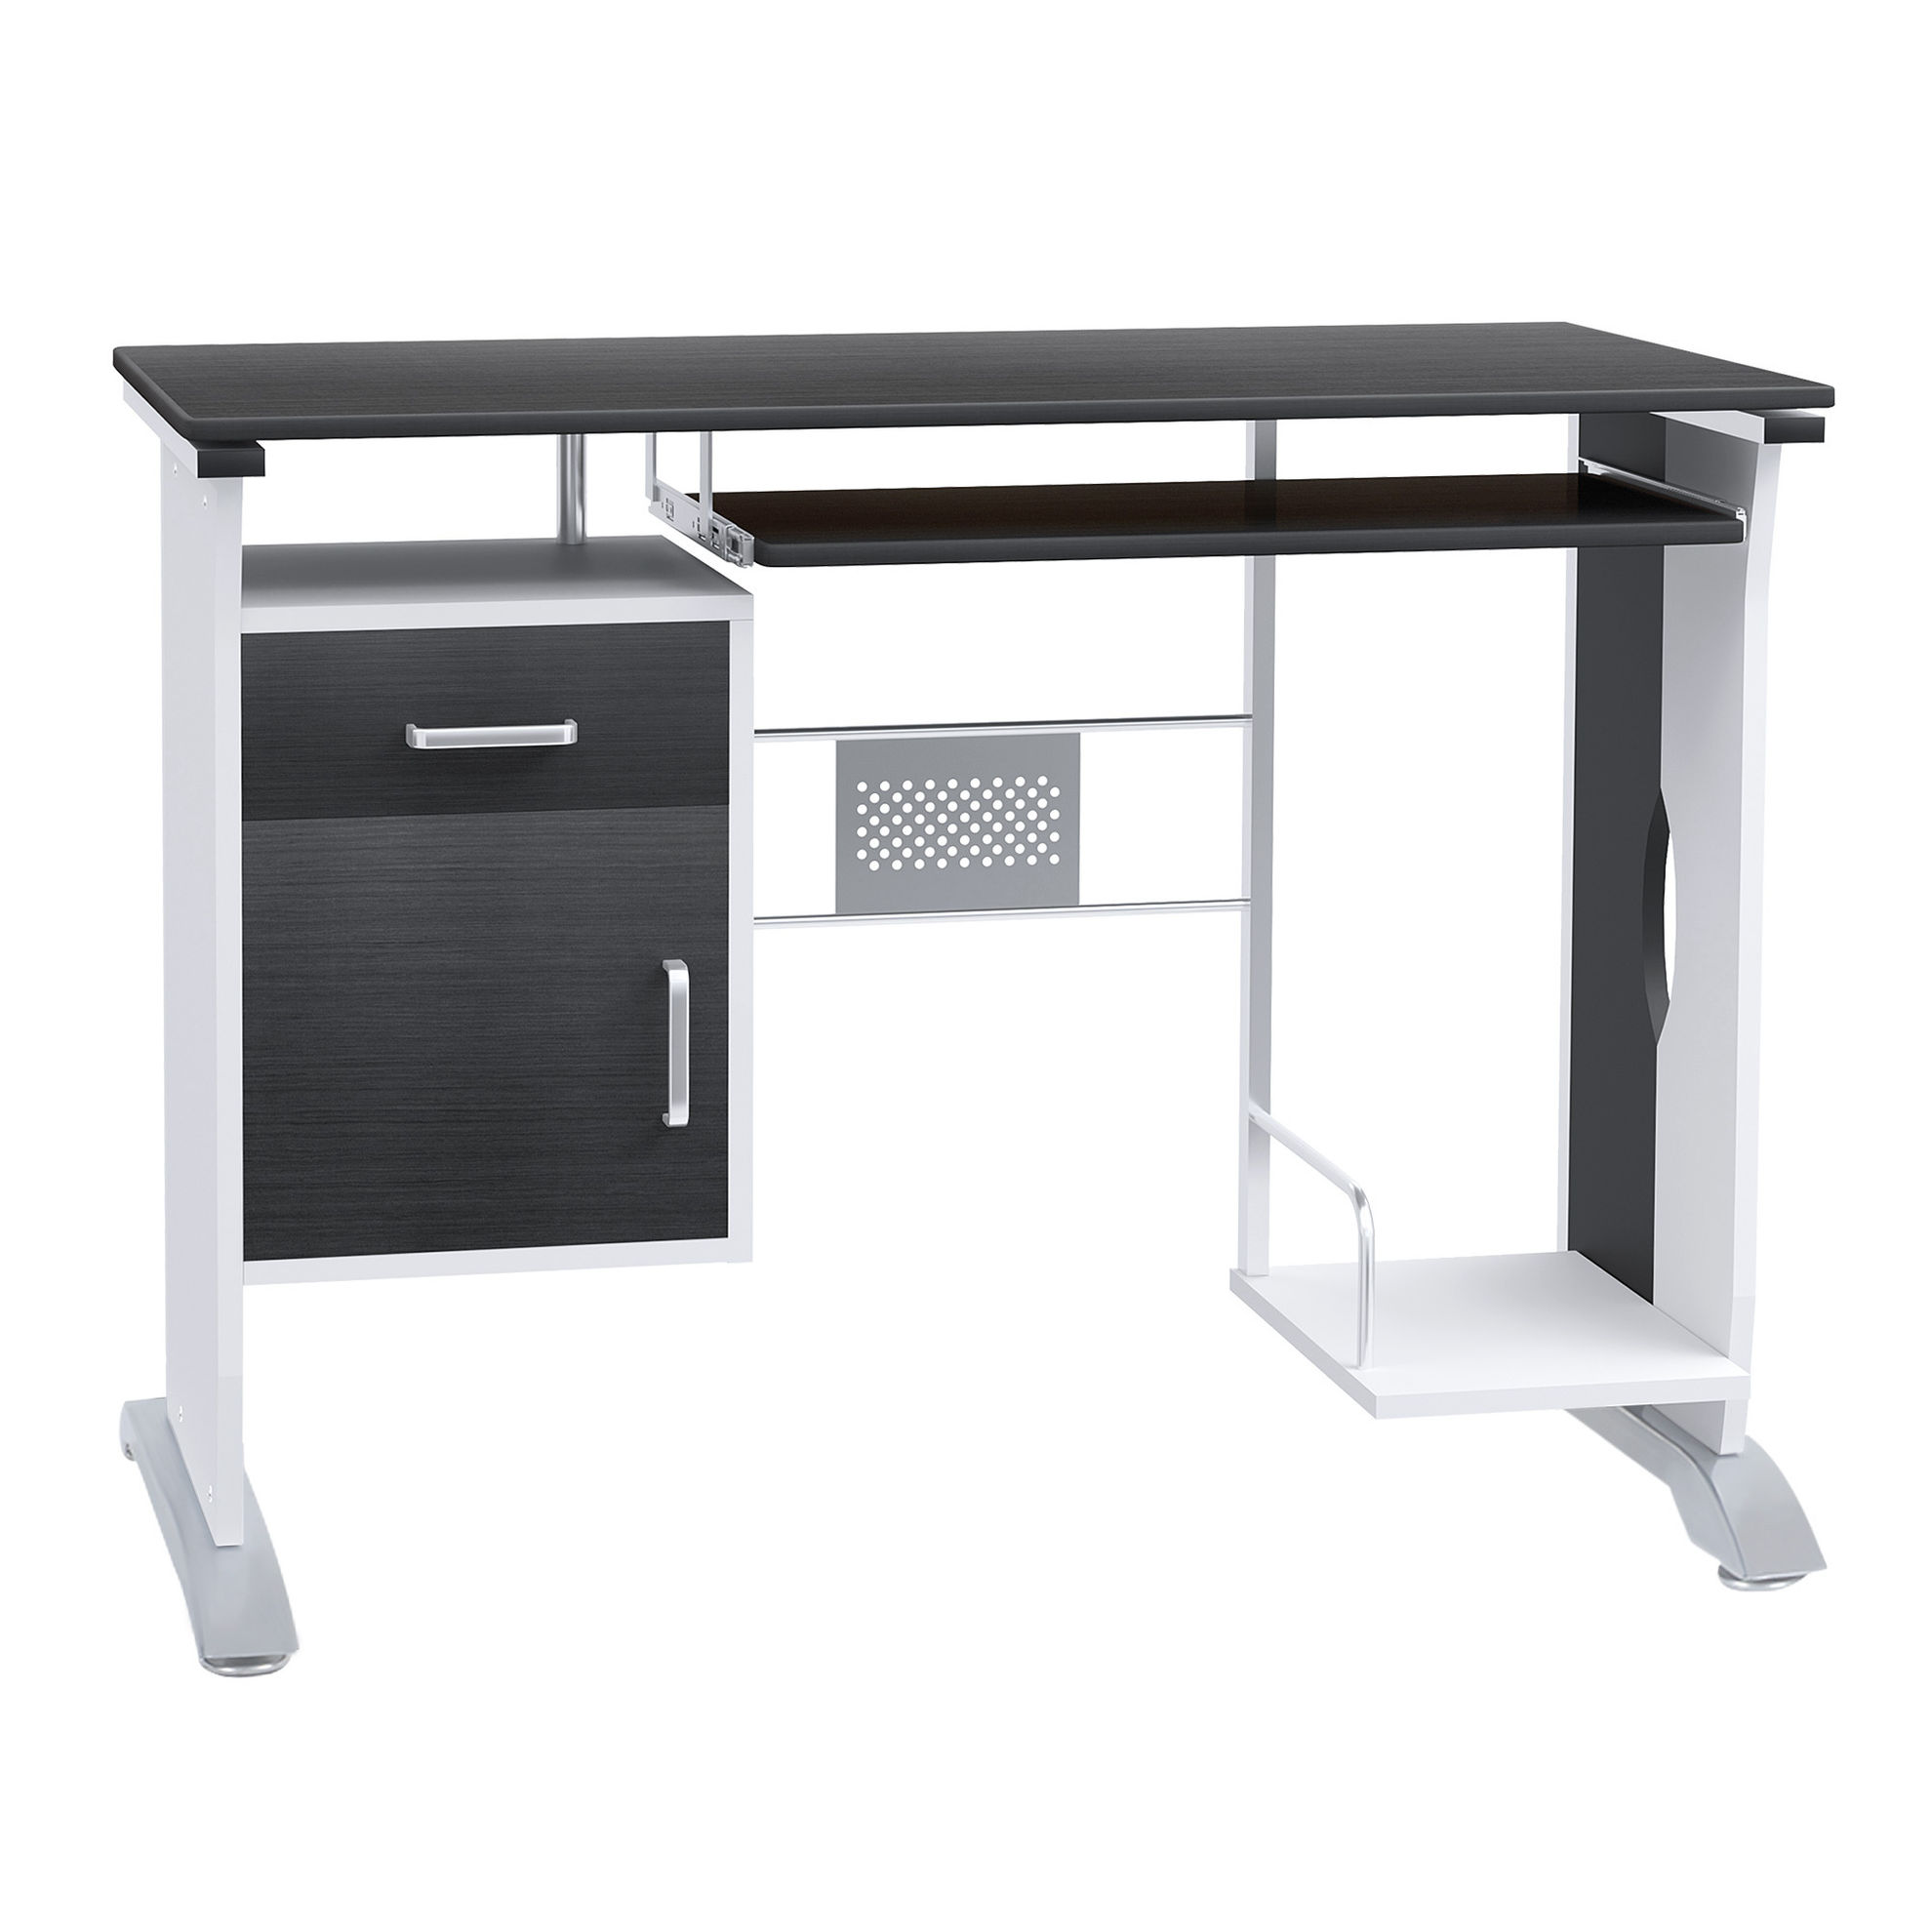 Schreibtisch Hochwertiger Stahl, Platzsparend, viel Stauraum Farbe:  schwarz, silber | Weltbild.de